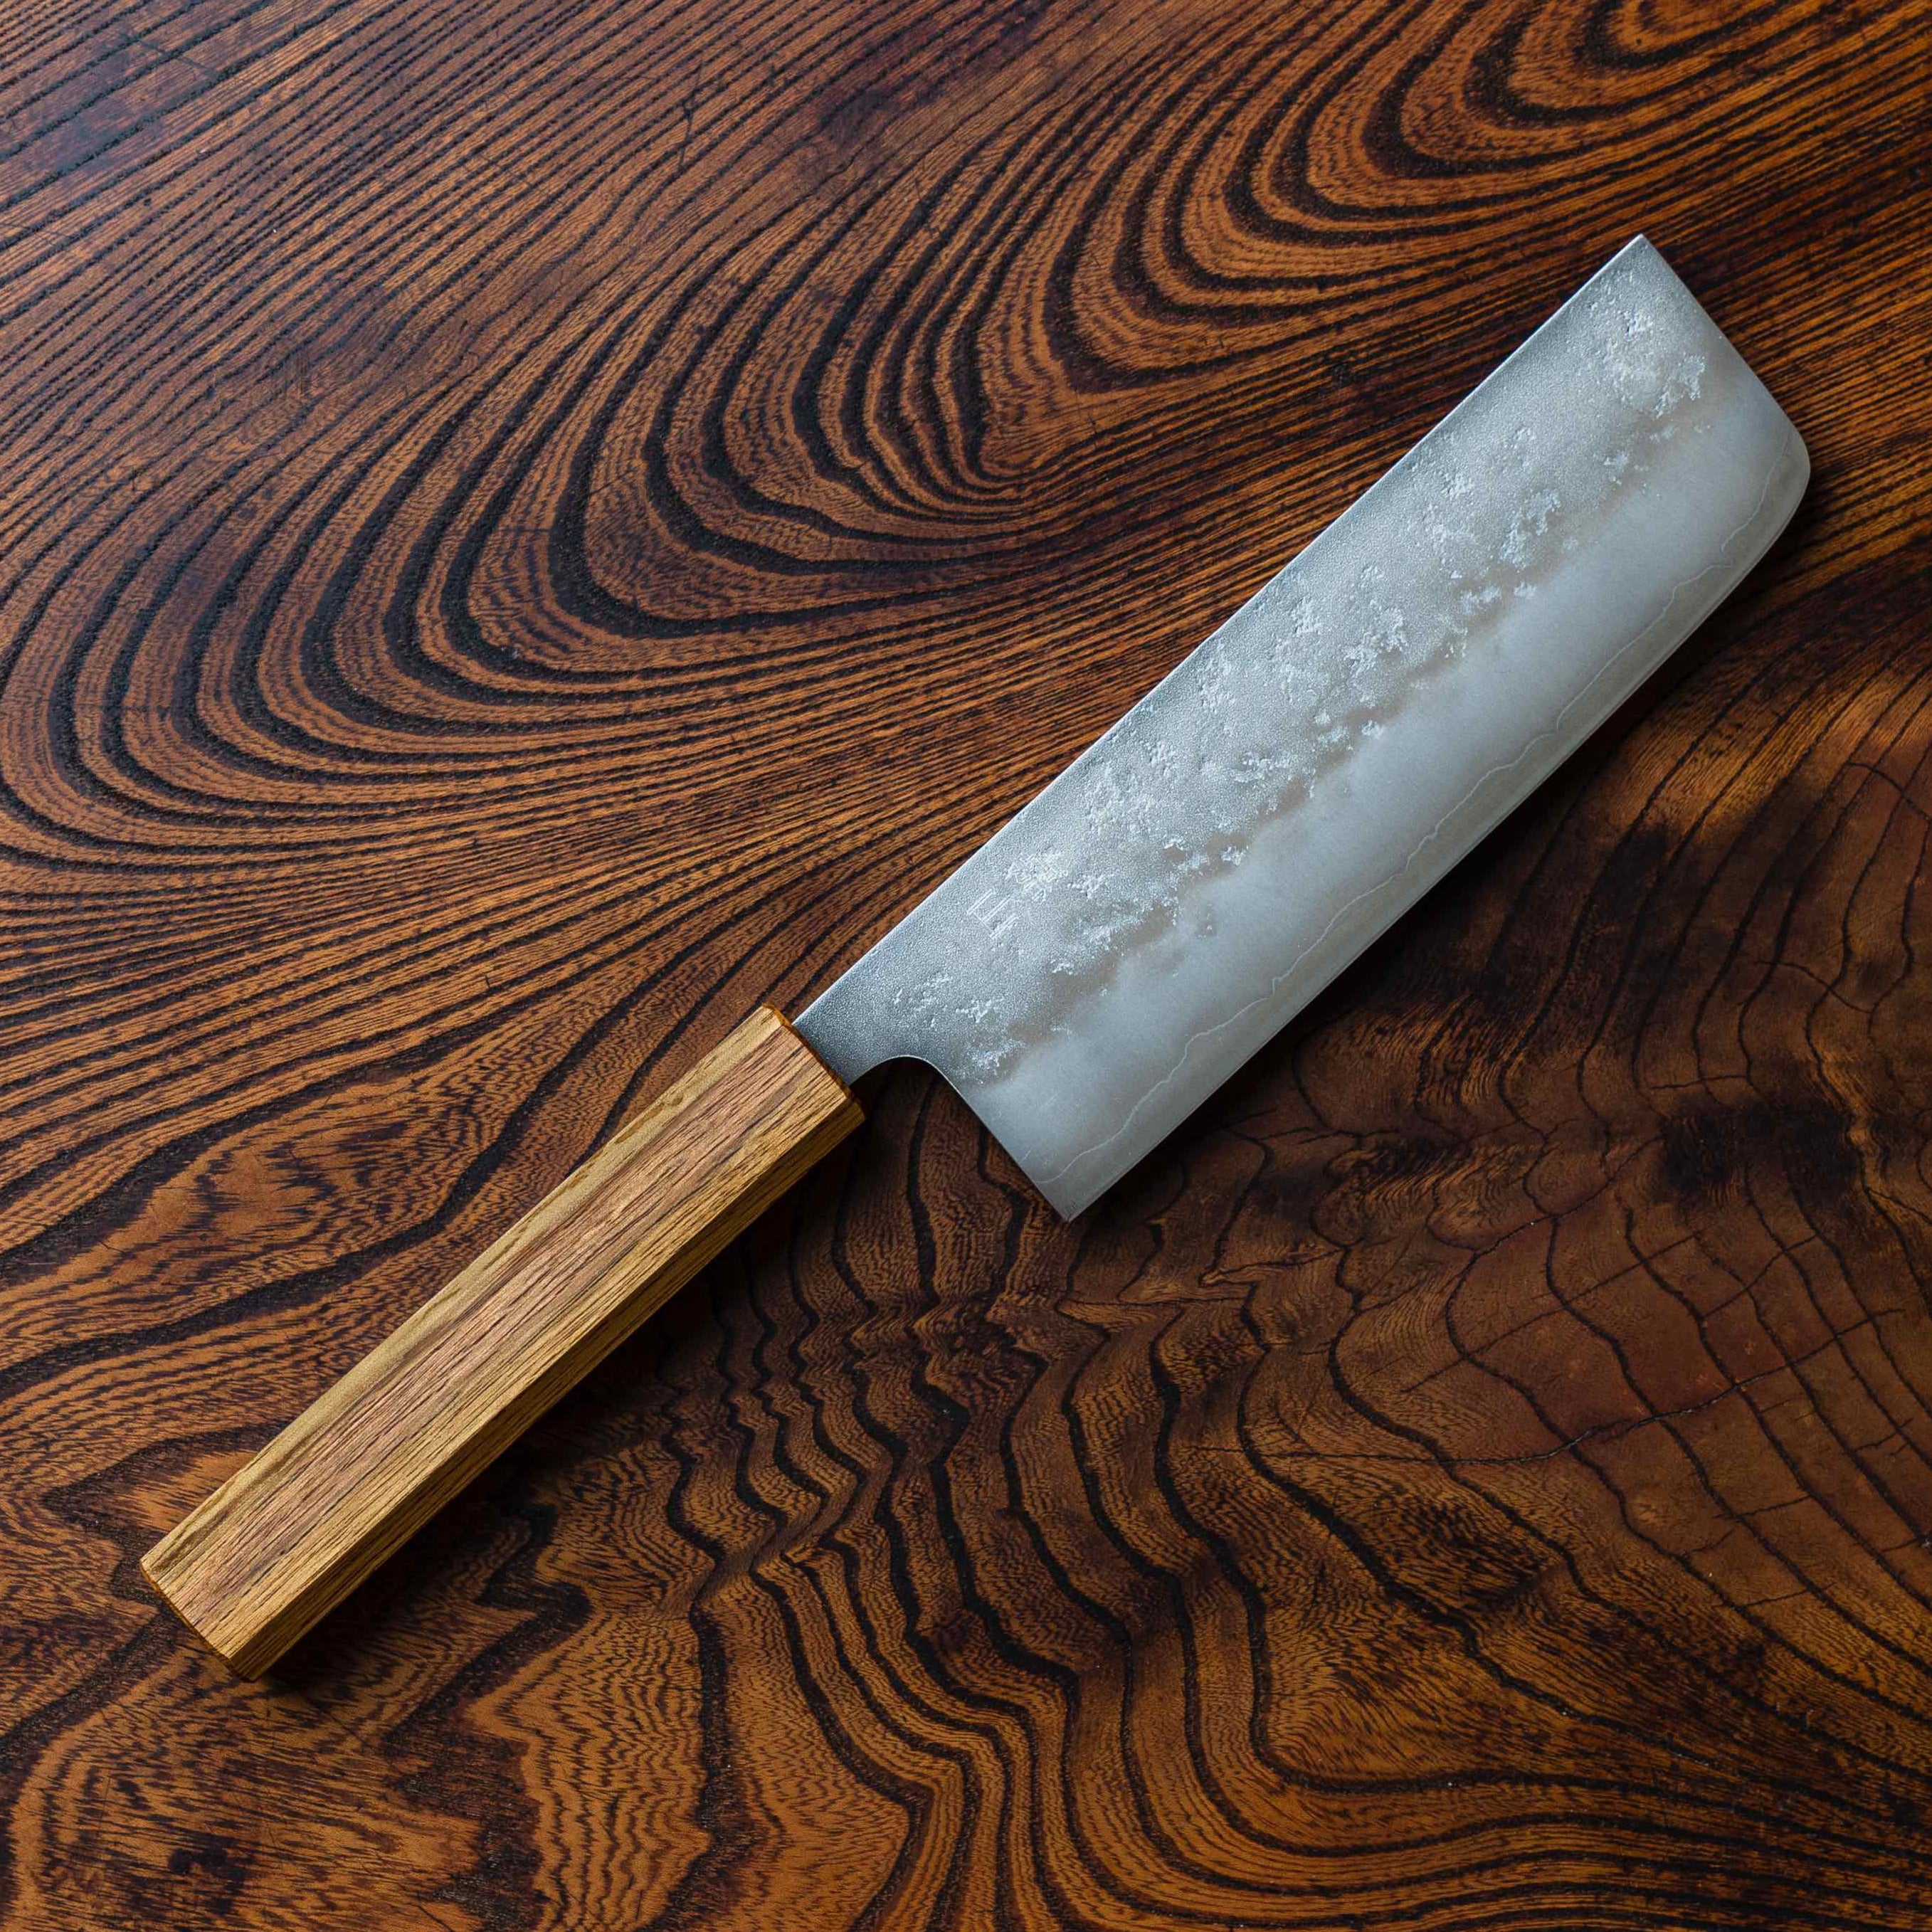 Nakiri knife [Nashiji] Japanese style 165mm